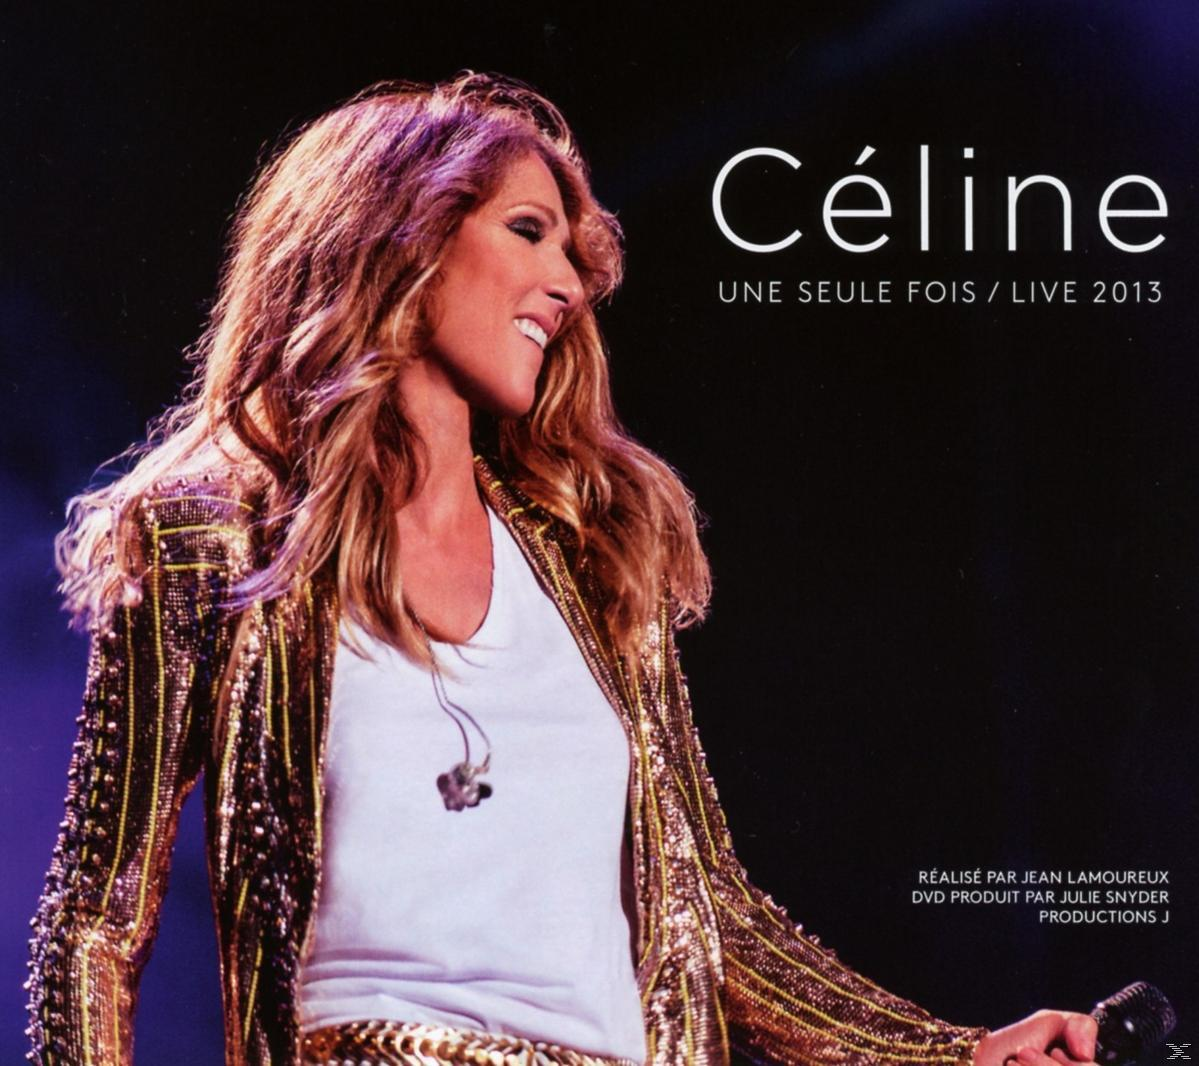 Céline Dion Fois/Live Video) - 2013 - Seule Céline...Une DVD (CD 